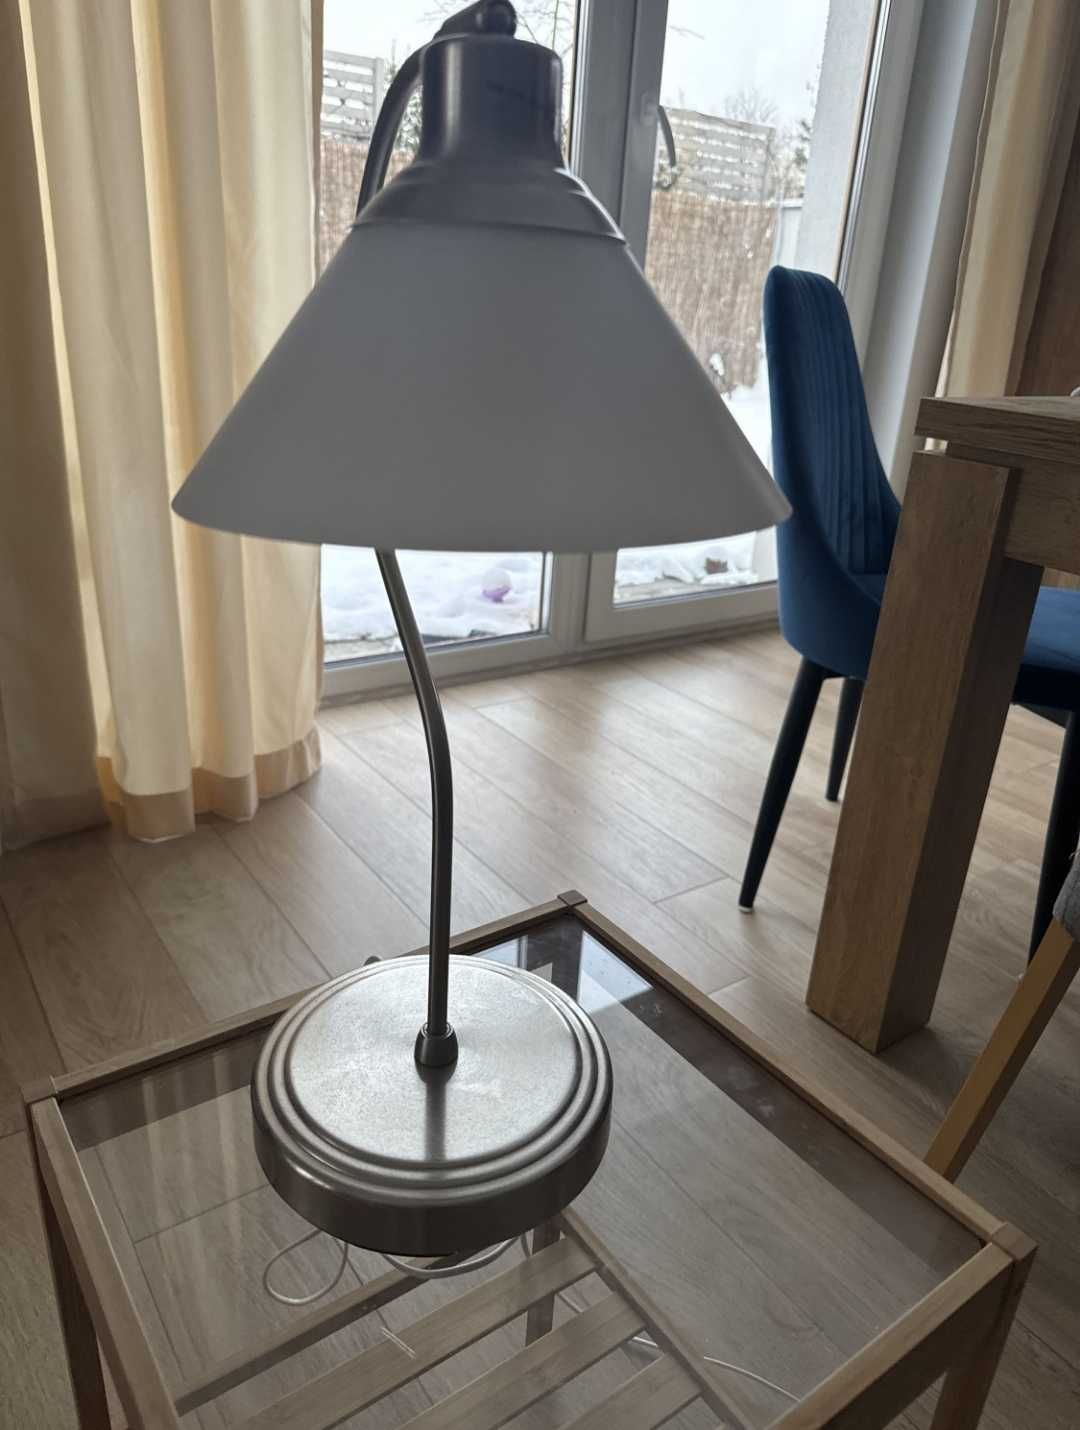 Zestaw IKEA jeden stolik plus lampa.